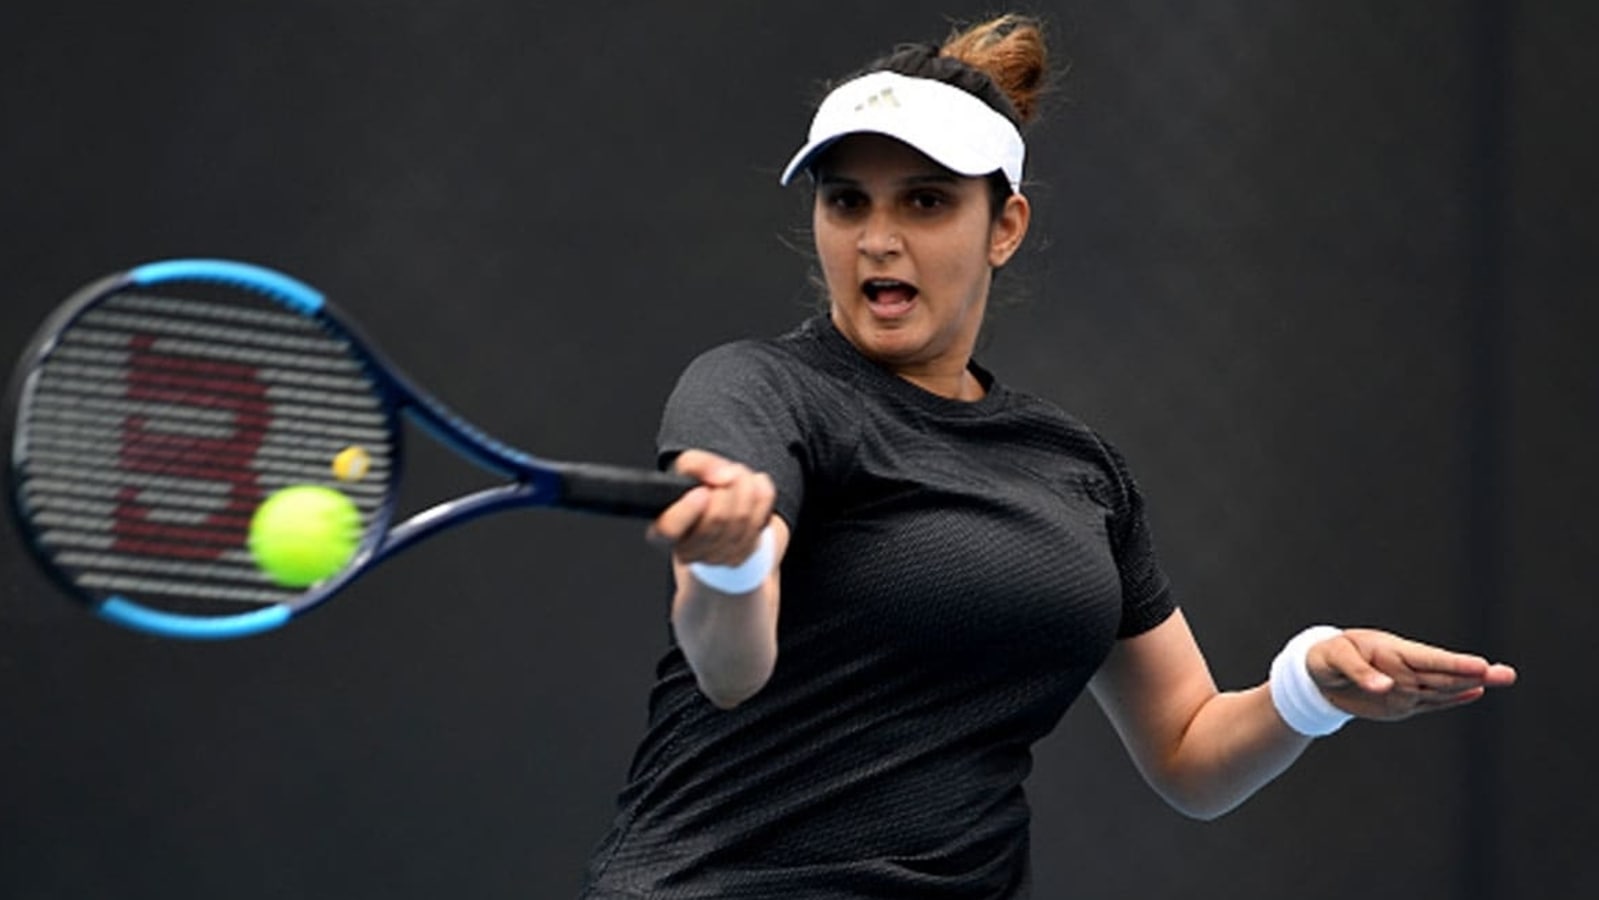 Sania Mirza Xxx - Sania Mirza to retire at Dubai meet next month | Tennis News - Hindustan  Times